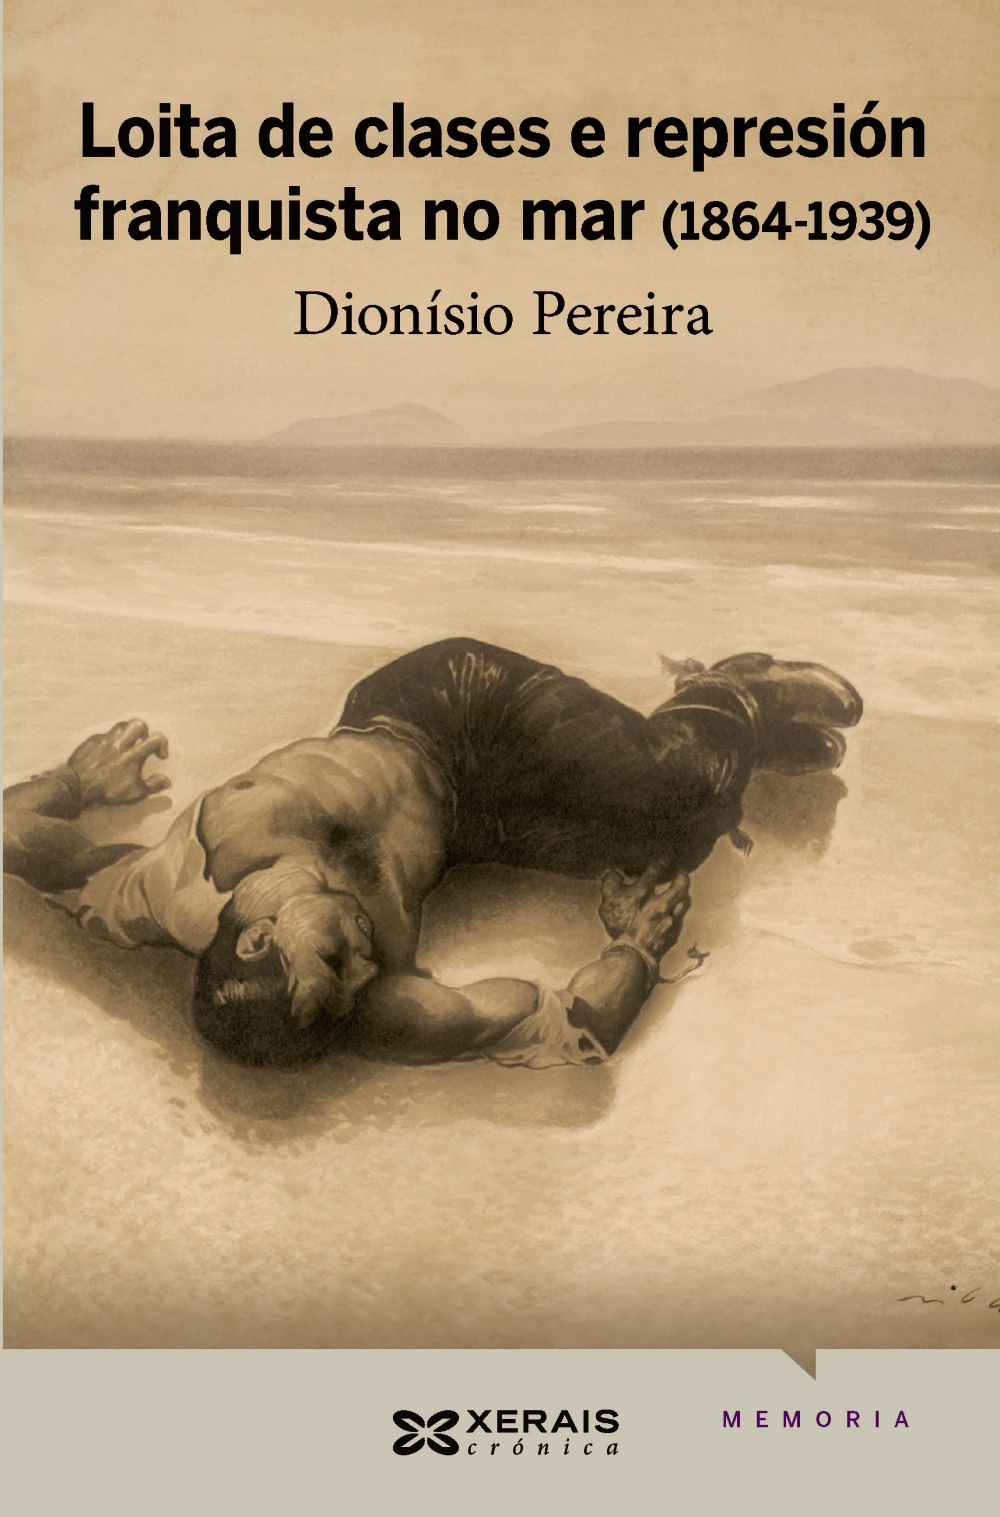 Loita de clases e represión franquista no mar (1864-1939)